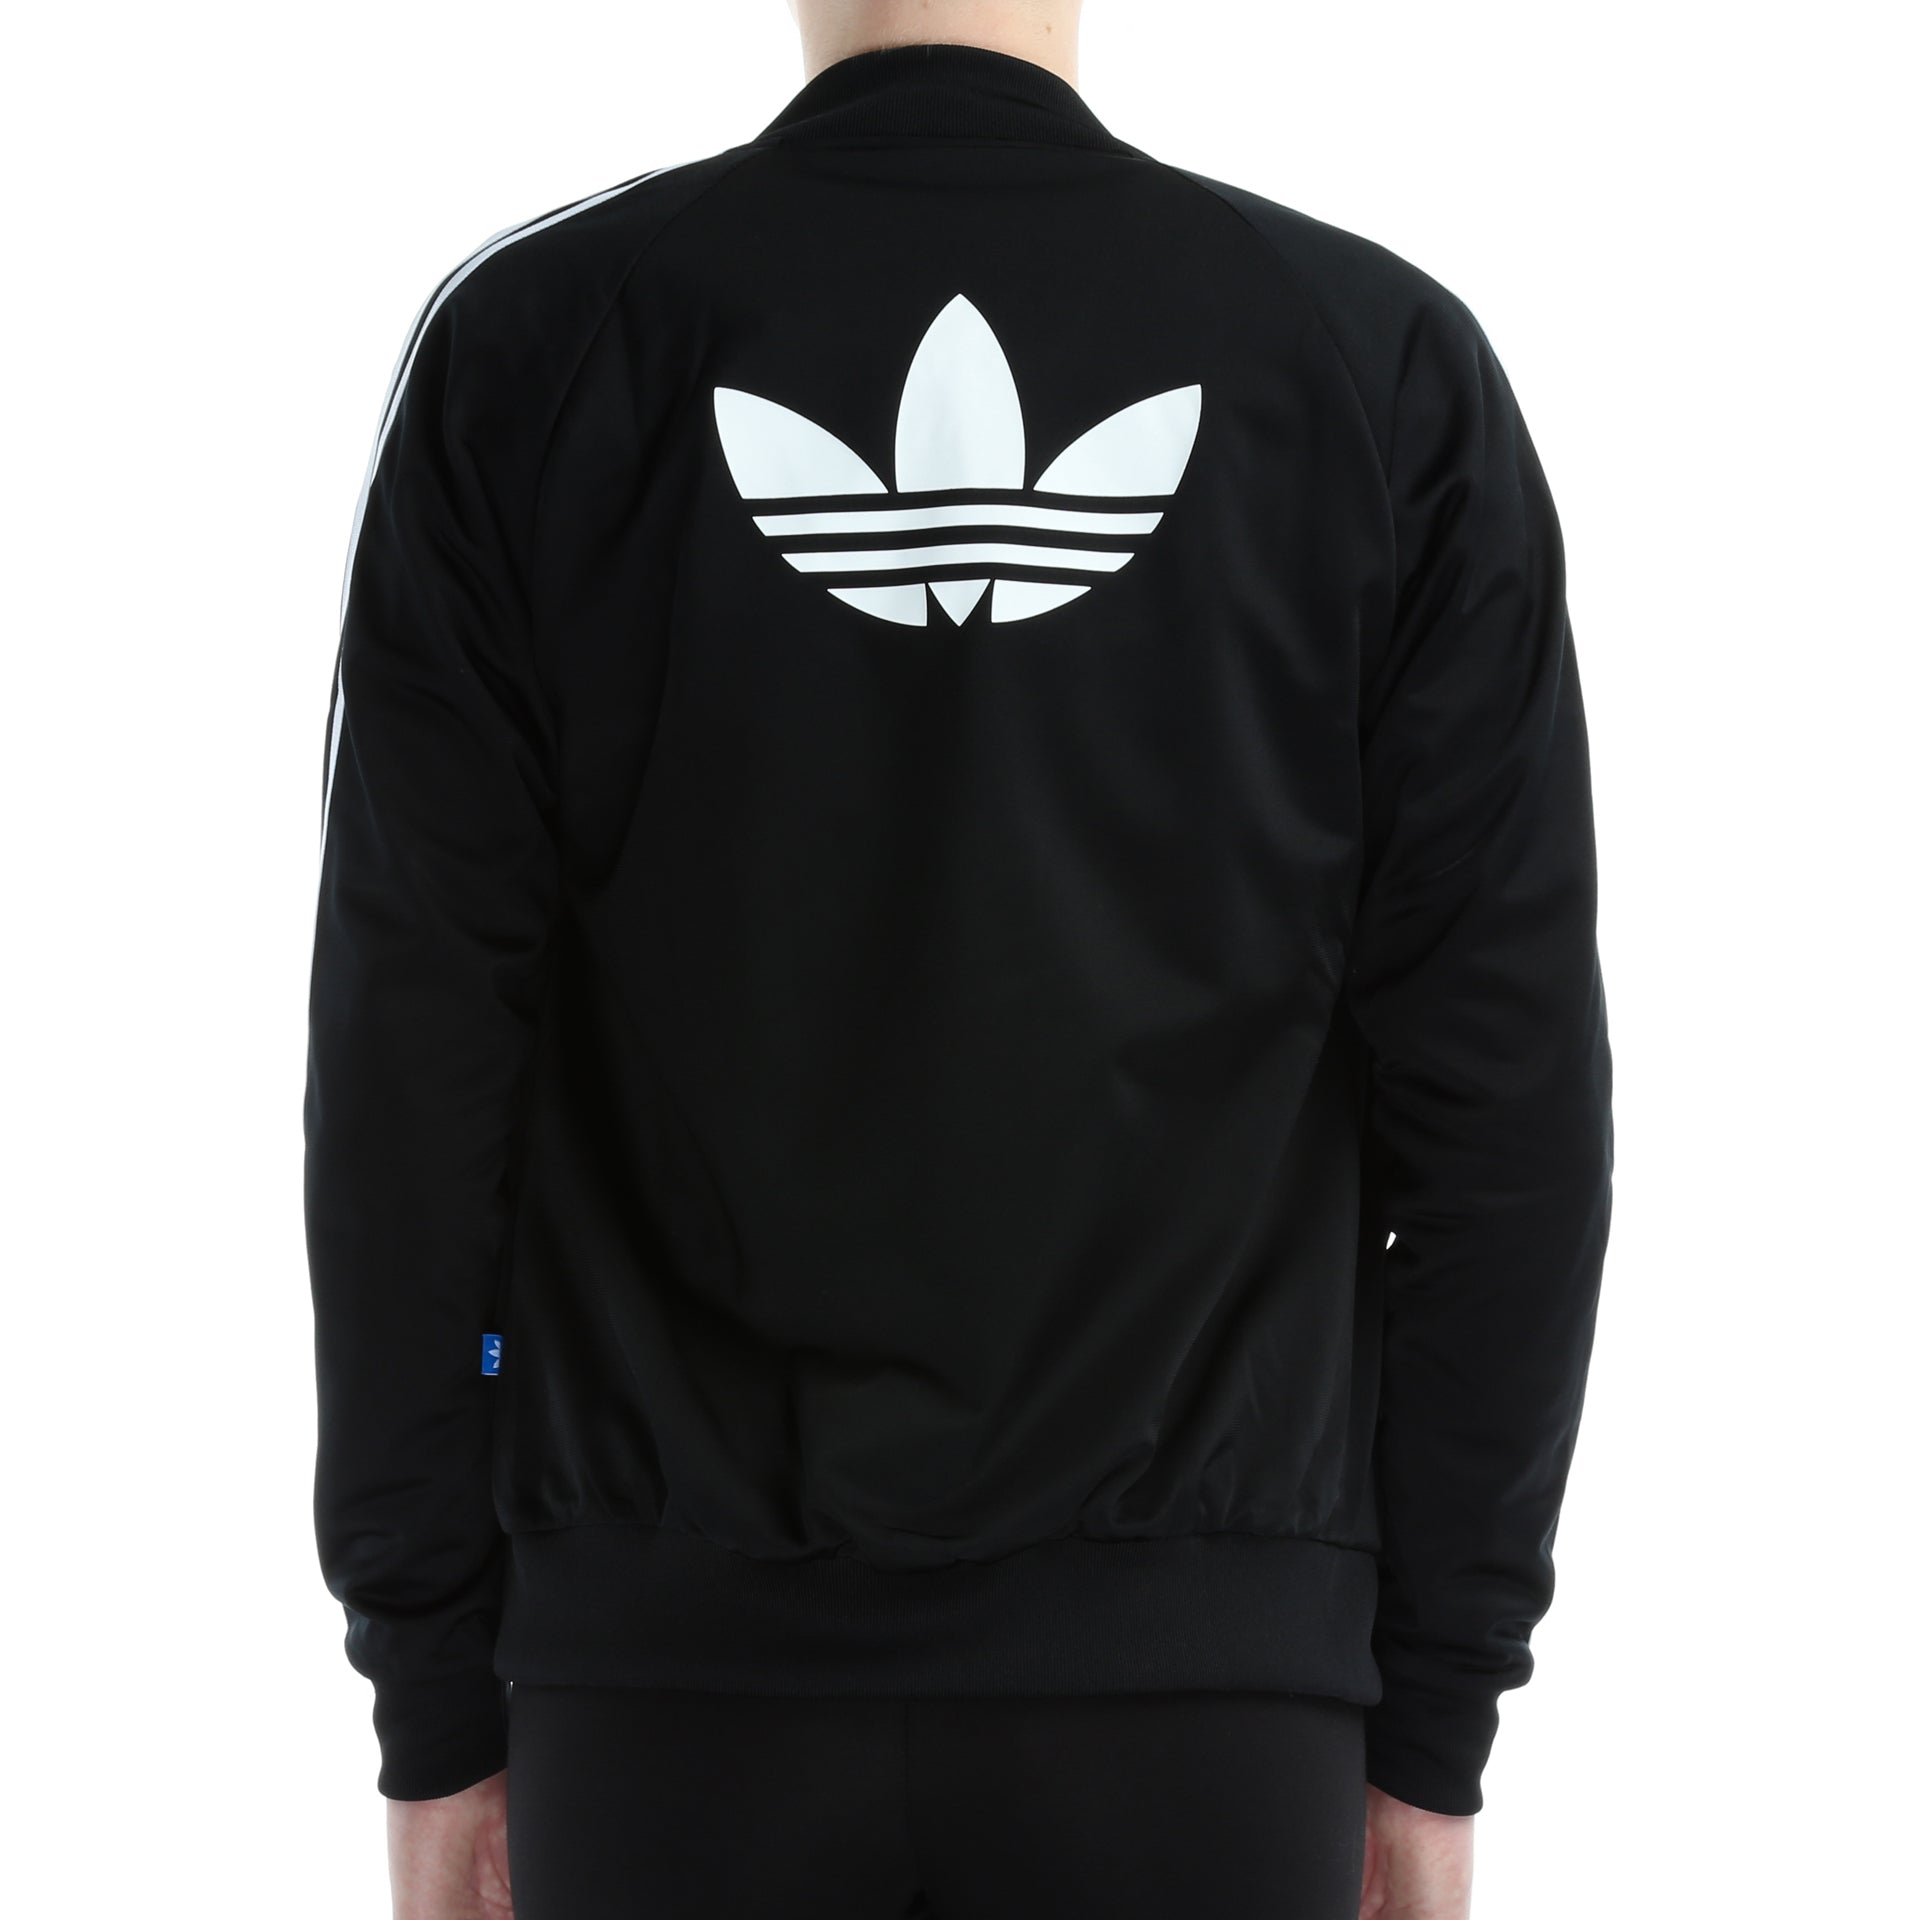 mens adidas jacket with logo on back